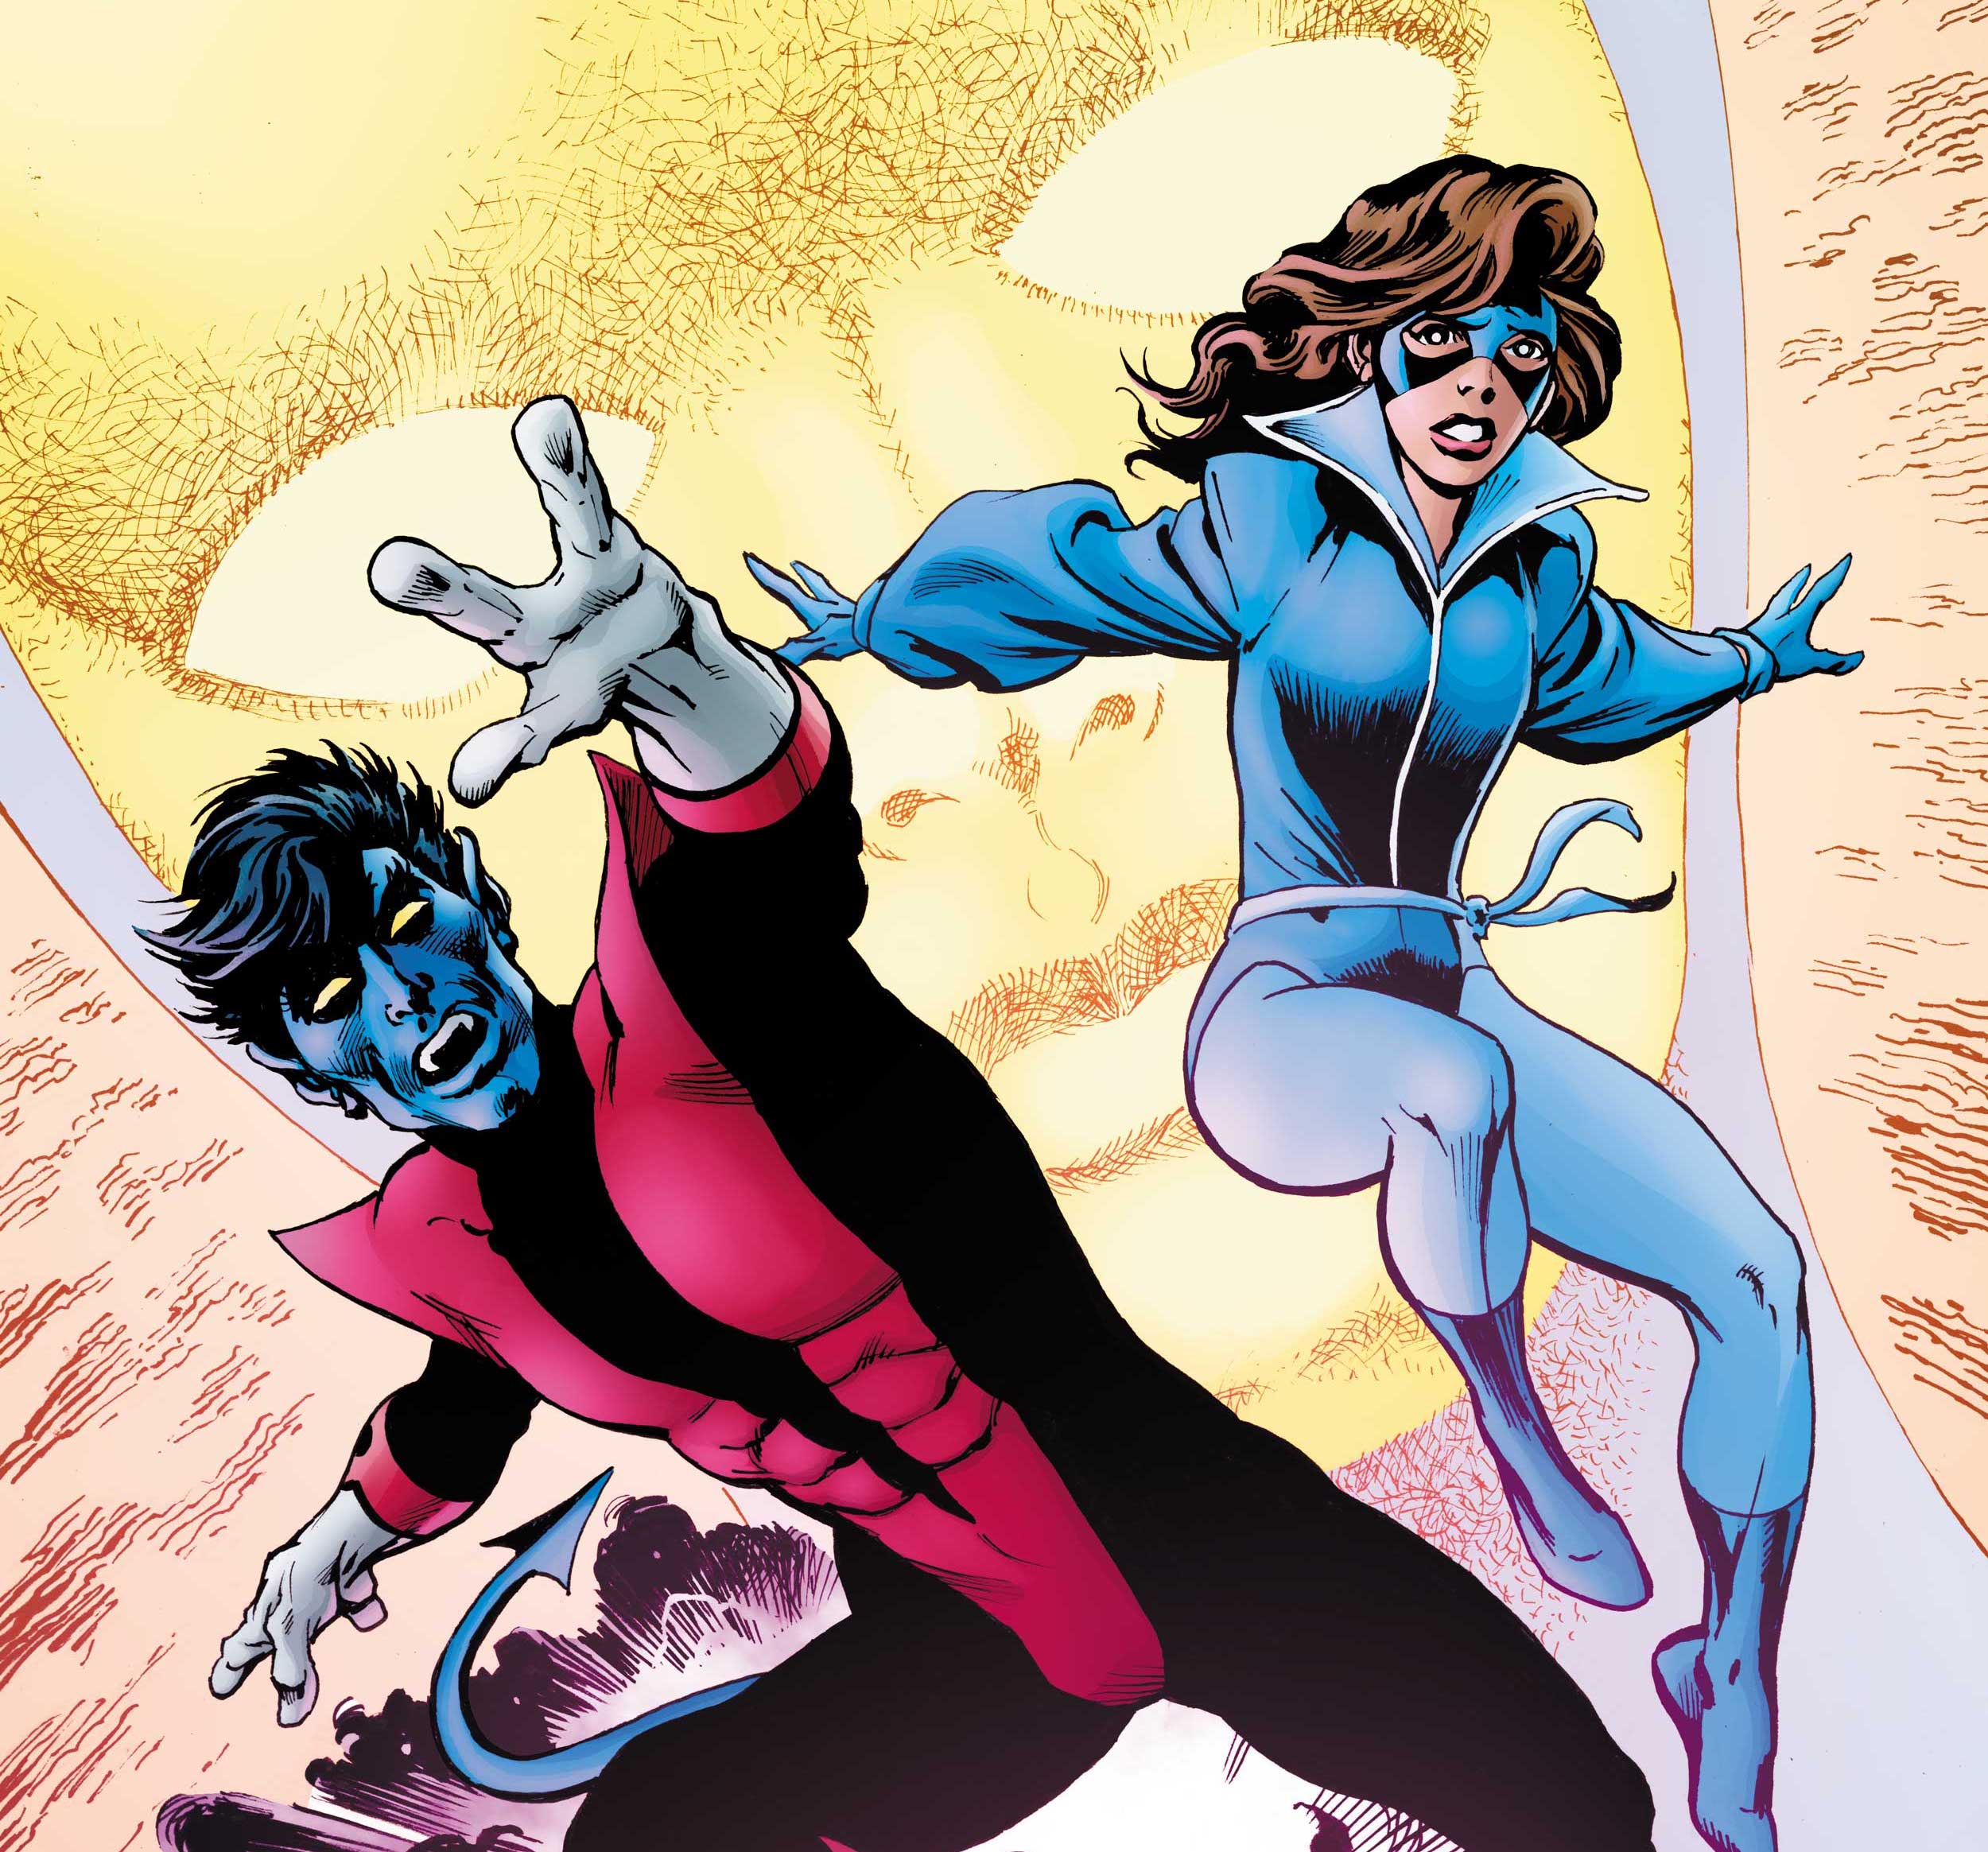 'X-Men' Legends #12 to feature Chris Claremont 'Excalibur' story